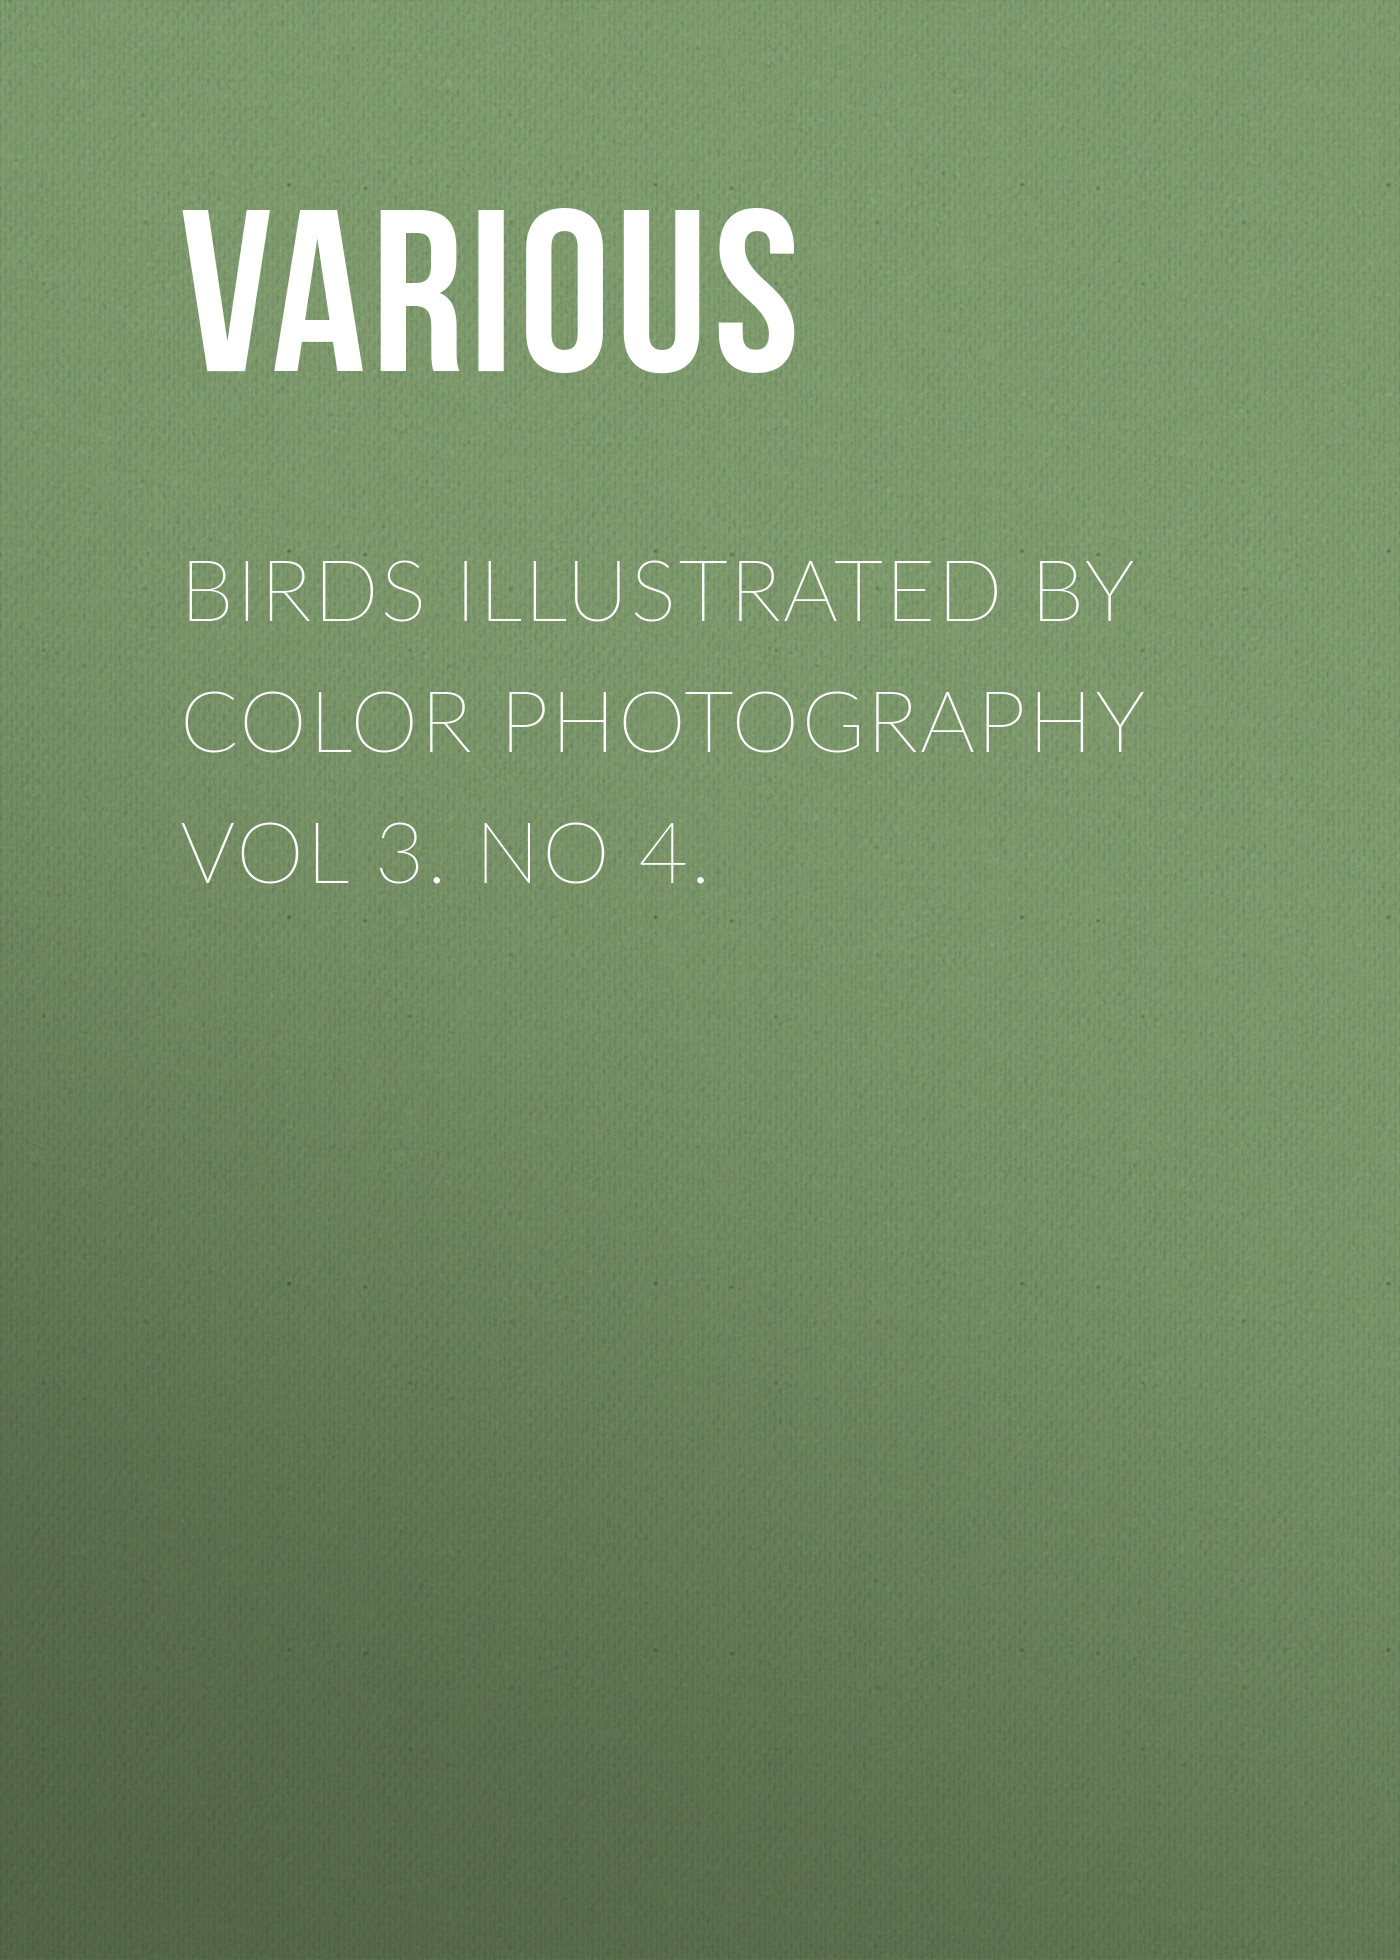 Книга Birds Illustrated by Color Photography Vol 3. No 4. из серии , созданная  Various, может относится к жанру Журналы, Биология, Природа и животные, Зарубежная образовательная литература. Стоимость электронной книги Birds Illustrated by Color Photography Vol 3. No 4. с идентификатором 25570855 составляет 0 руб.